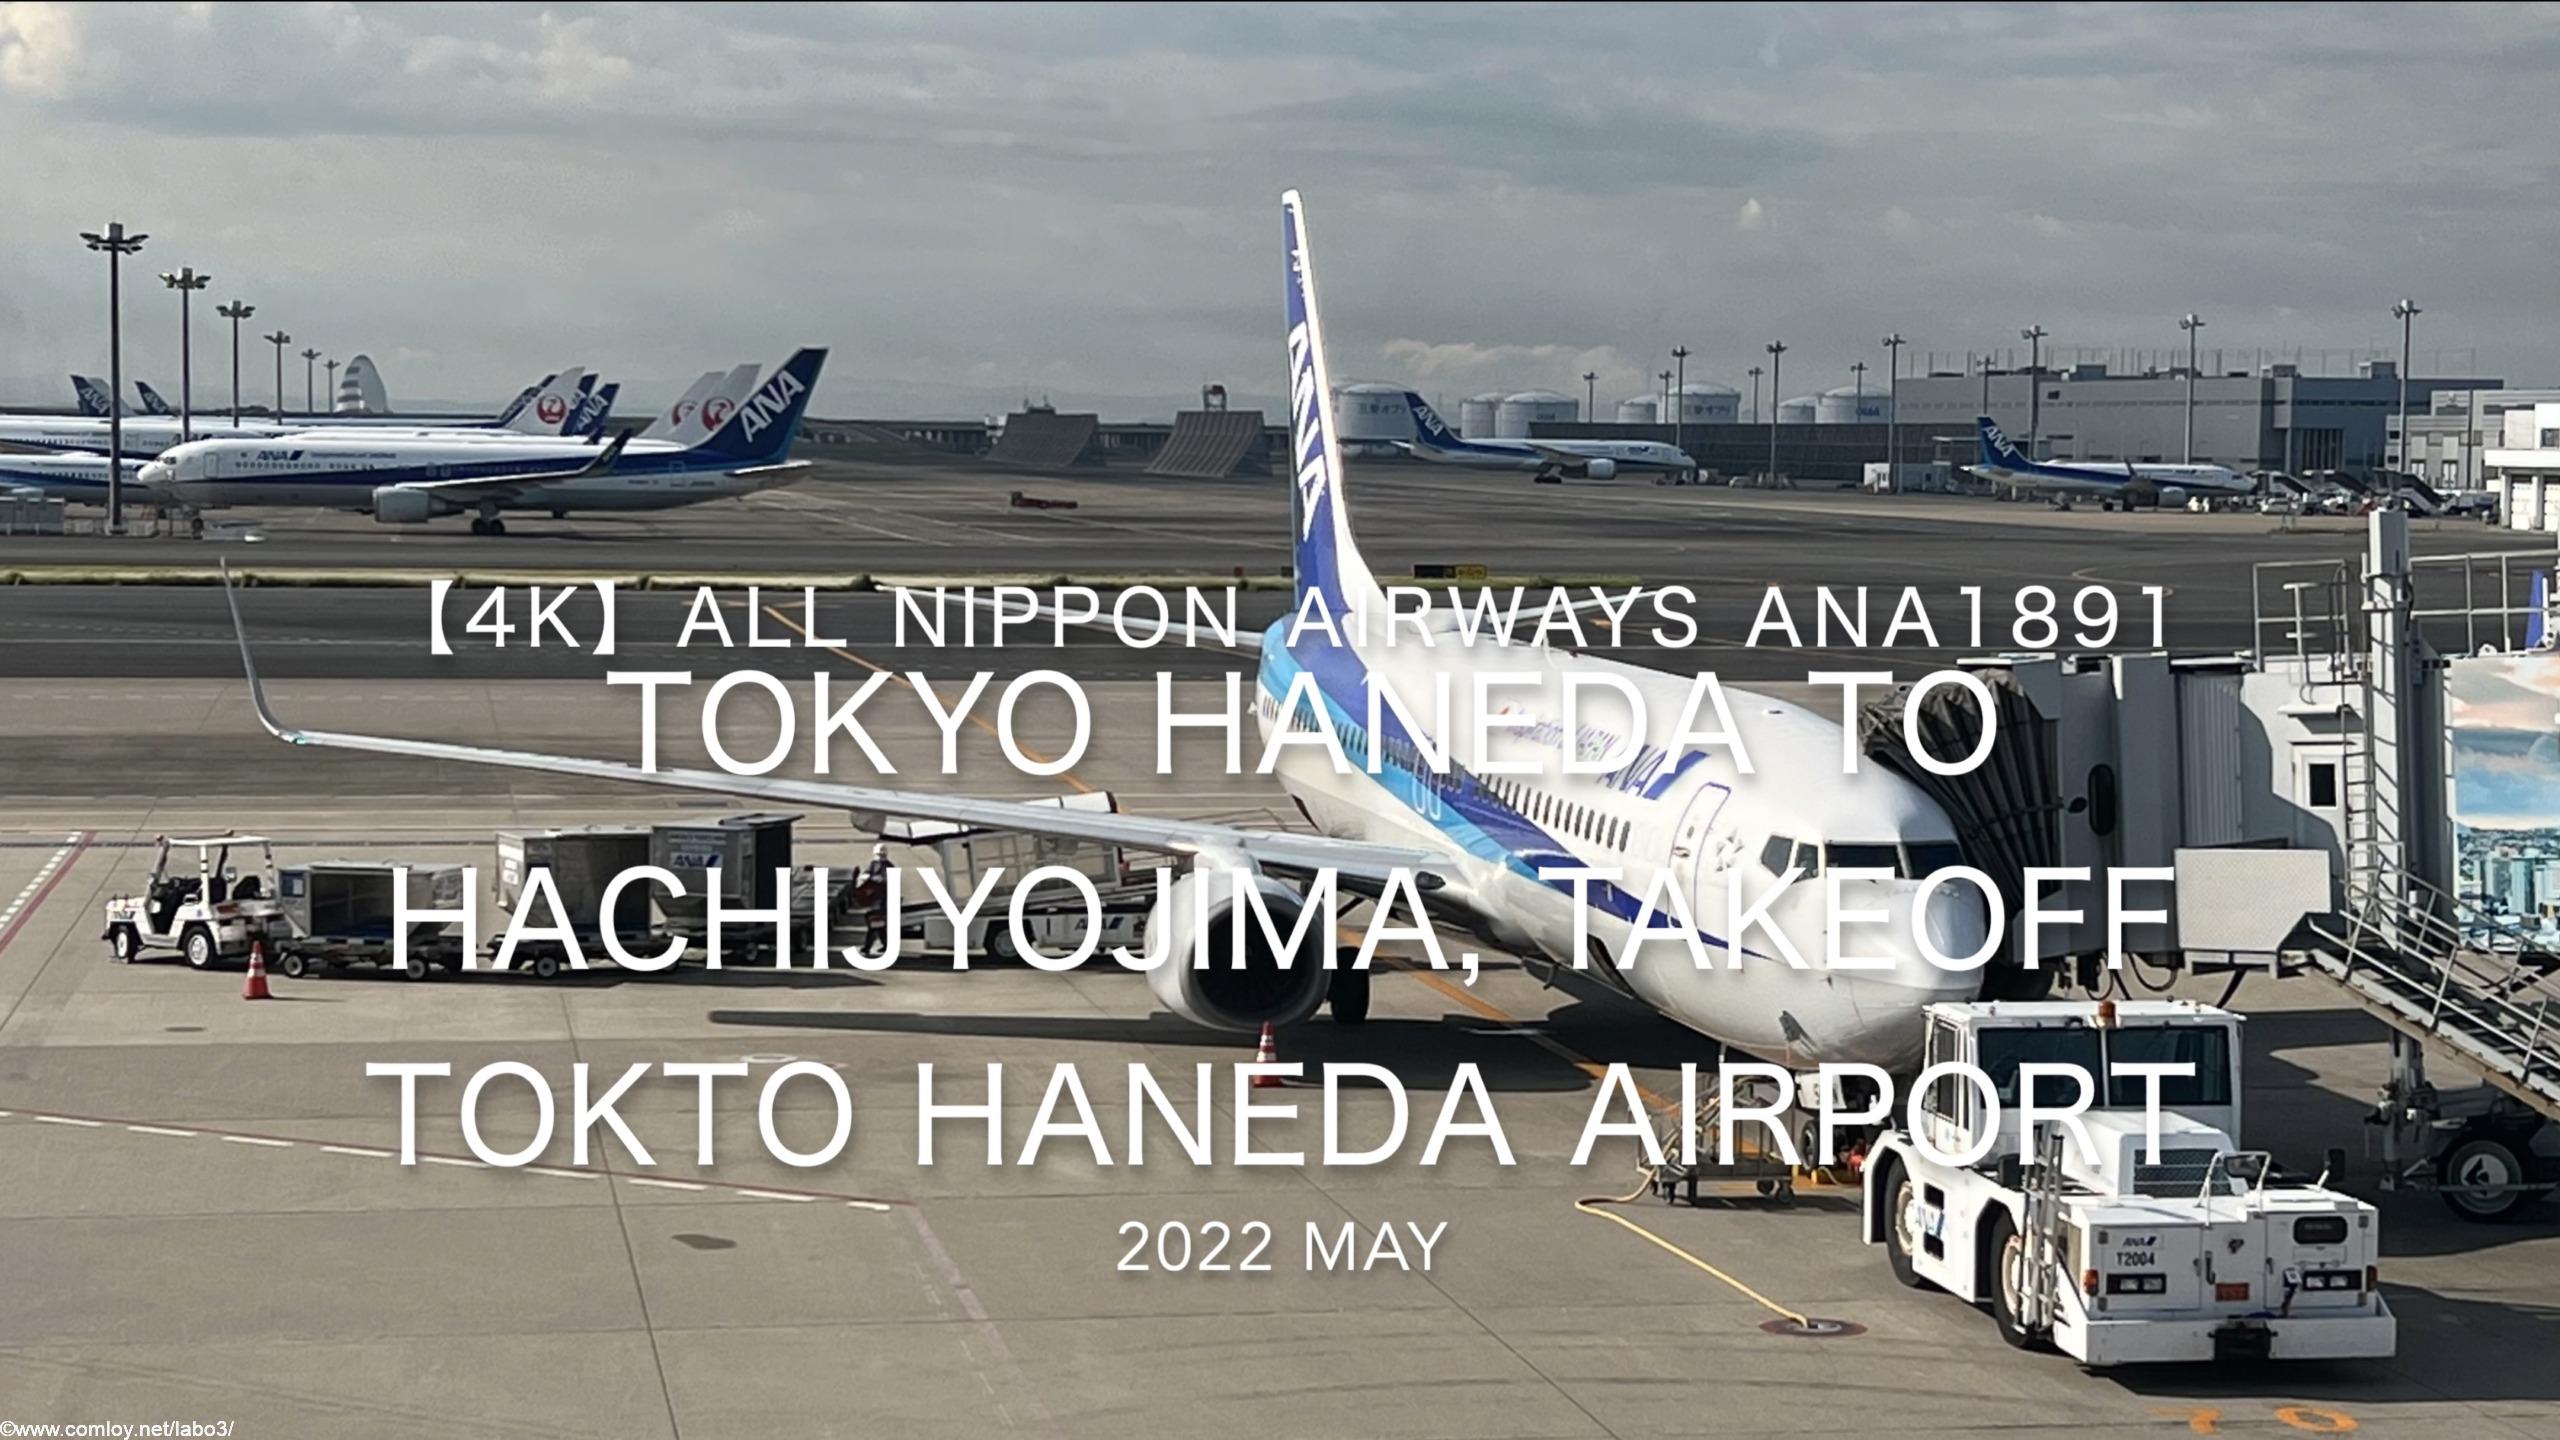 【機内から離着陸映像】2022 May All Nippon Airways ANA1891 TOKYO HANEDA to HACHIJYOJIMA, TAKEOFF TOKTO HANEDA Airport